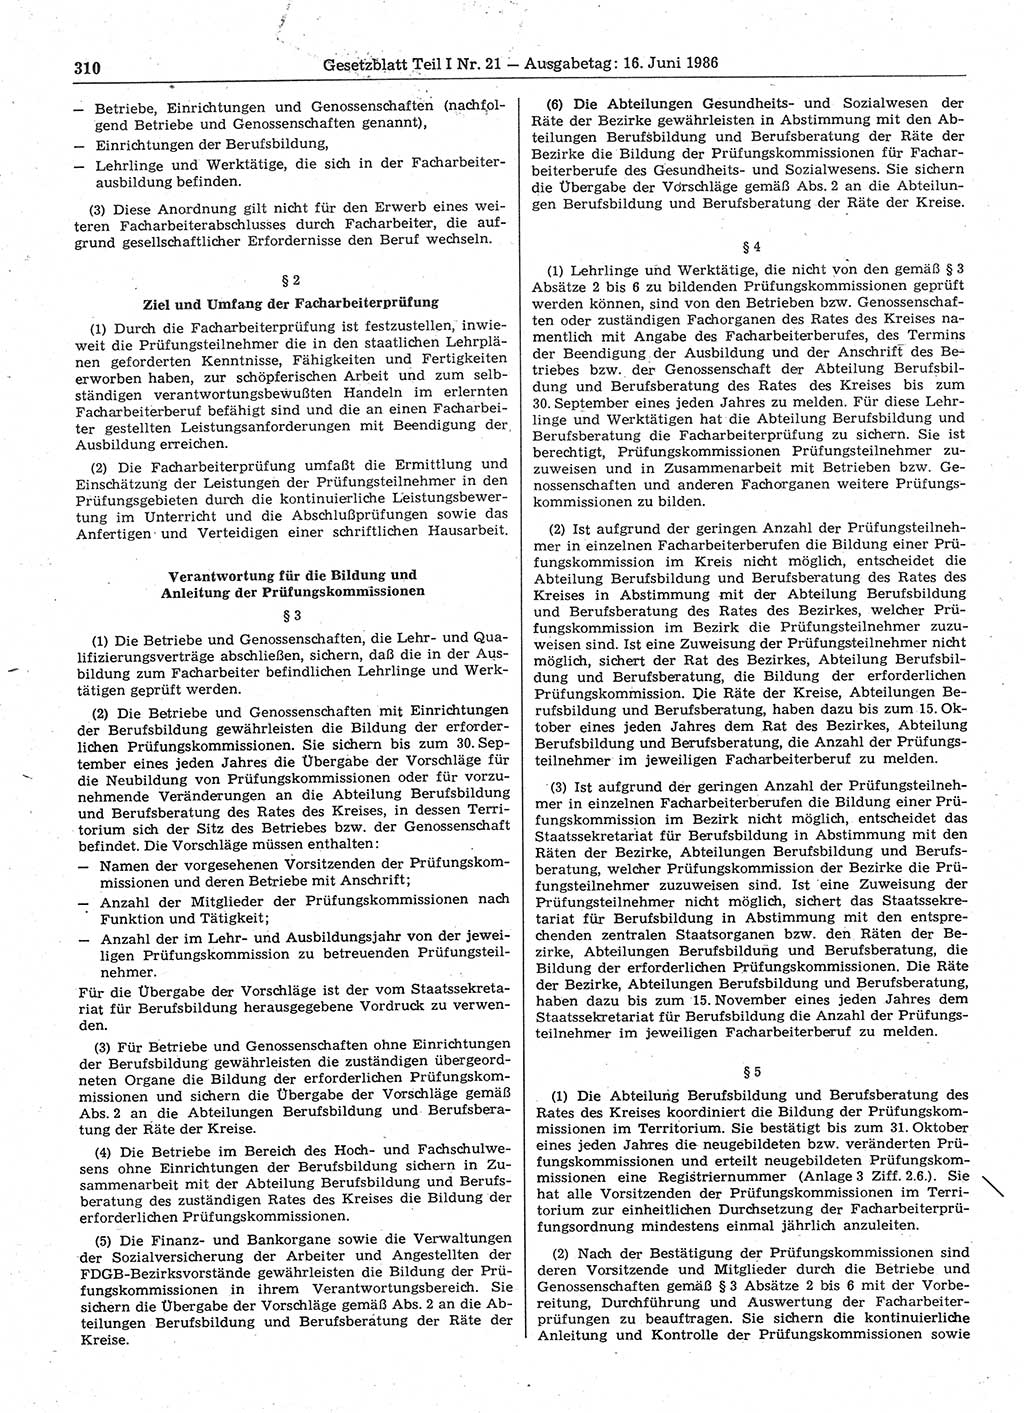 Gesetzblatt (GBl.) der Deutschen Demokratischen Republik (DDR) Teil Ⅰ 1986, Seite 310 (GBl. DDR Ⅰ 1986, S. 310)